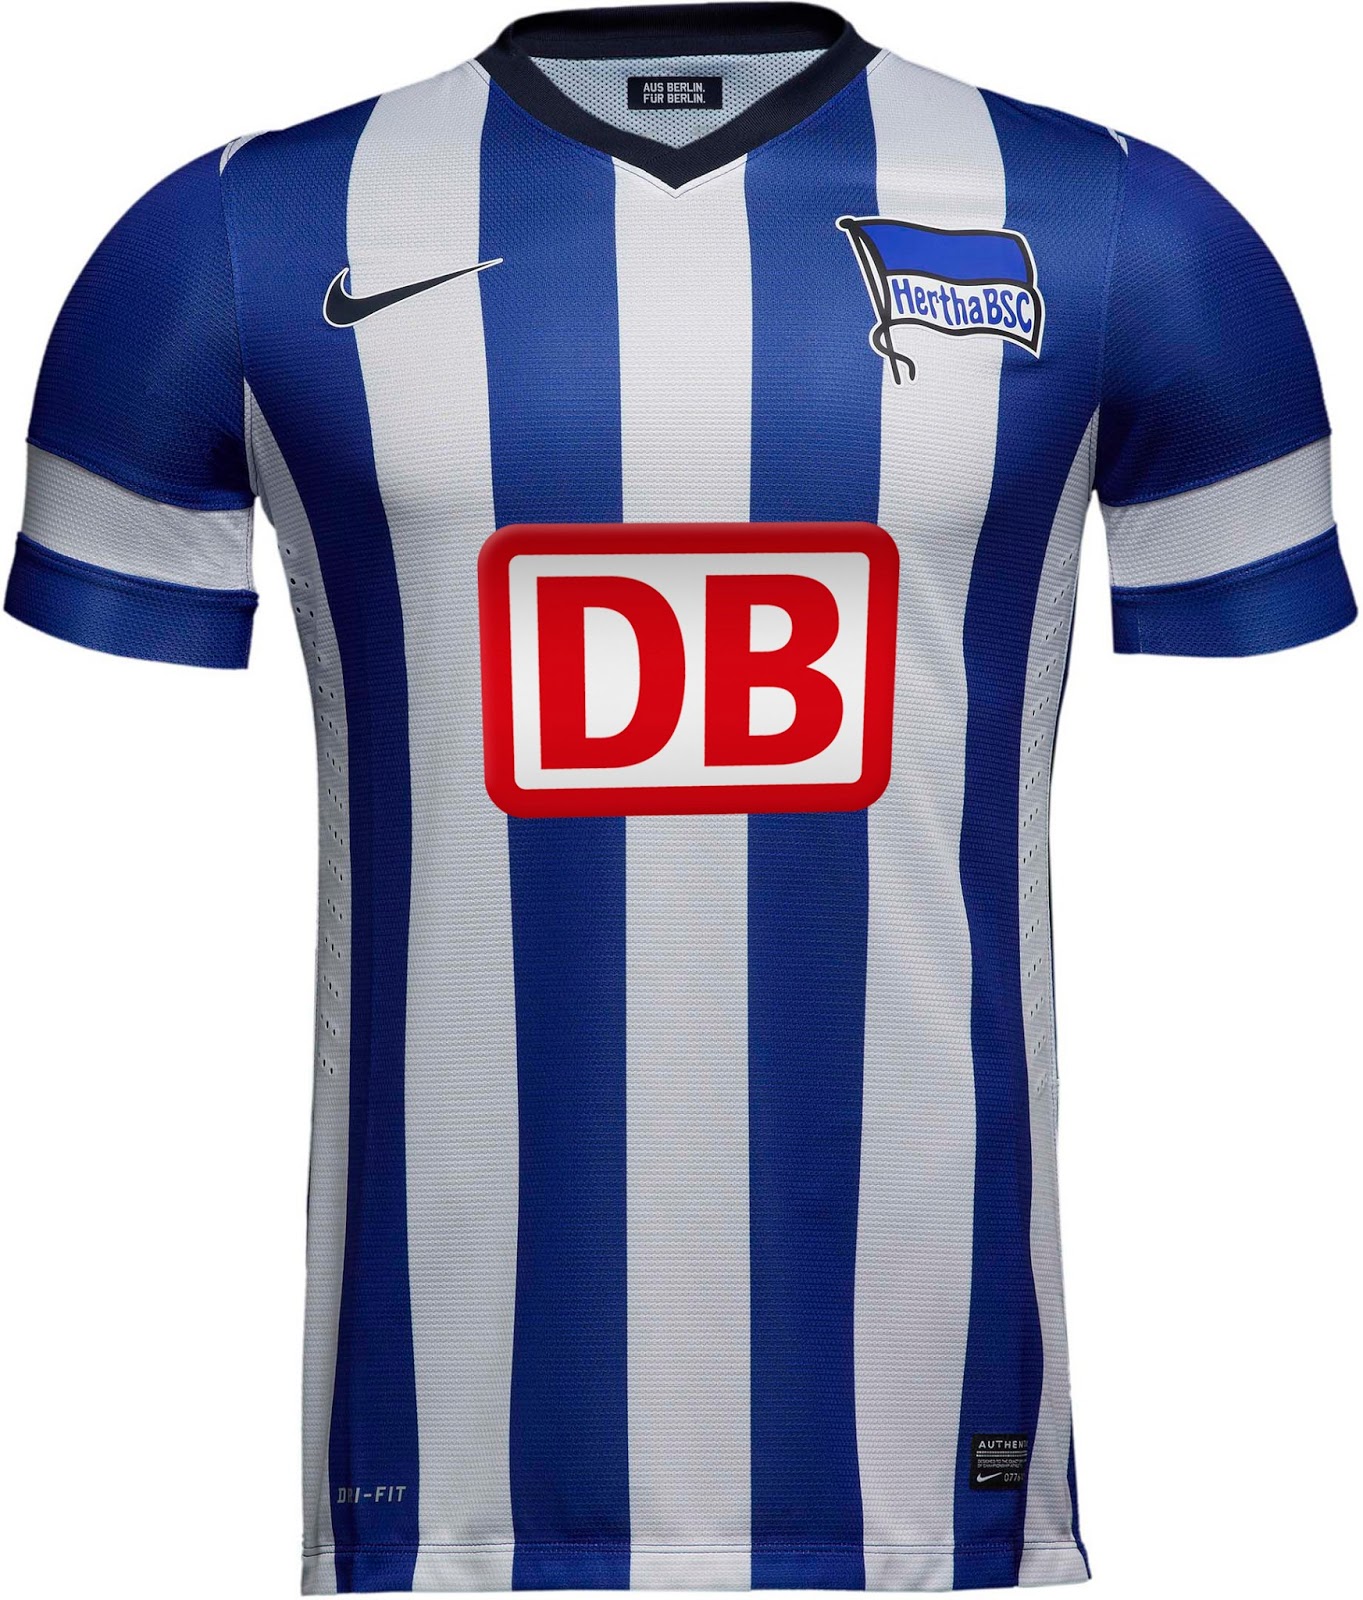 Hertha BSC thuisshirt 2013/2014